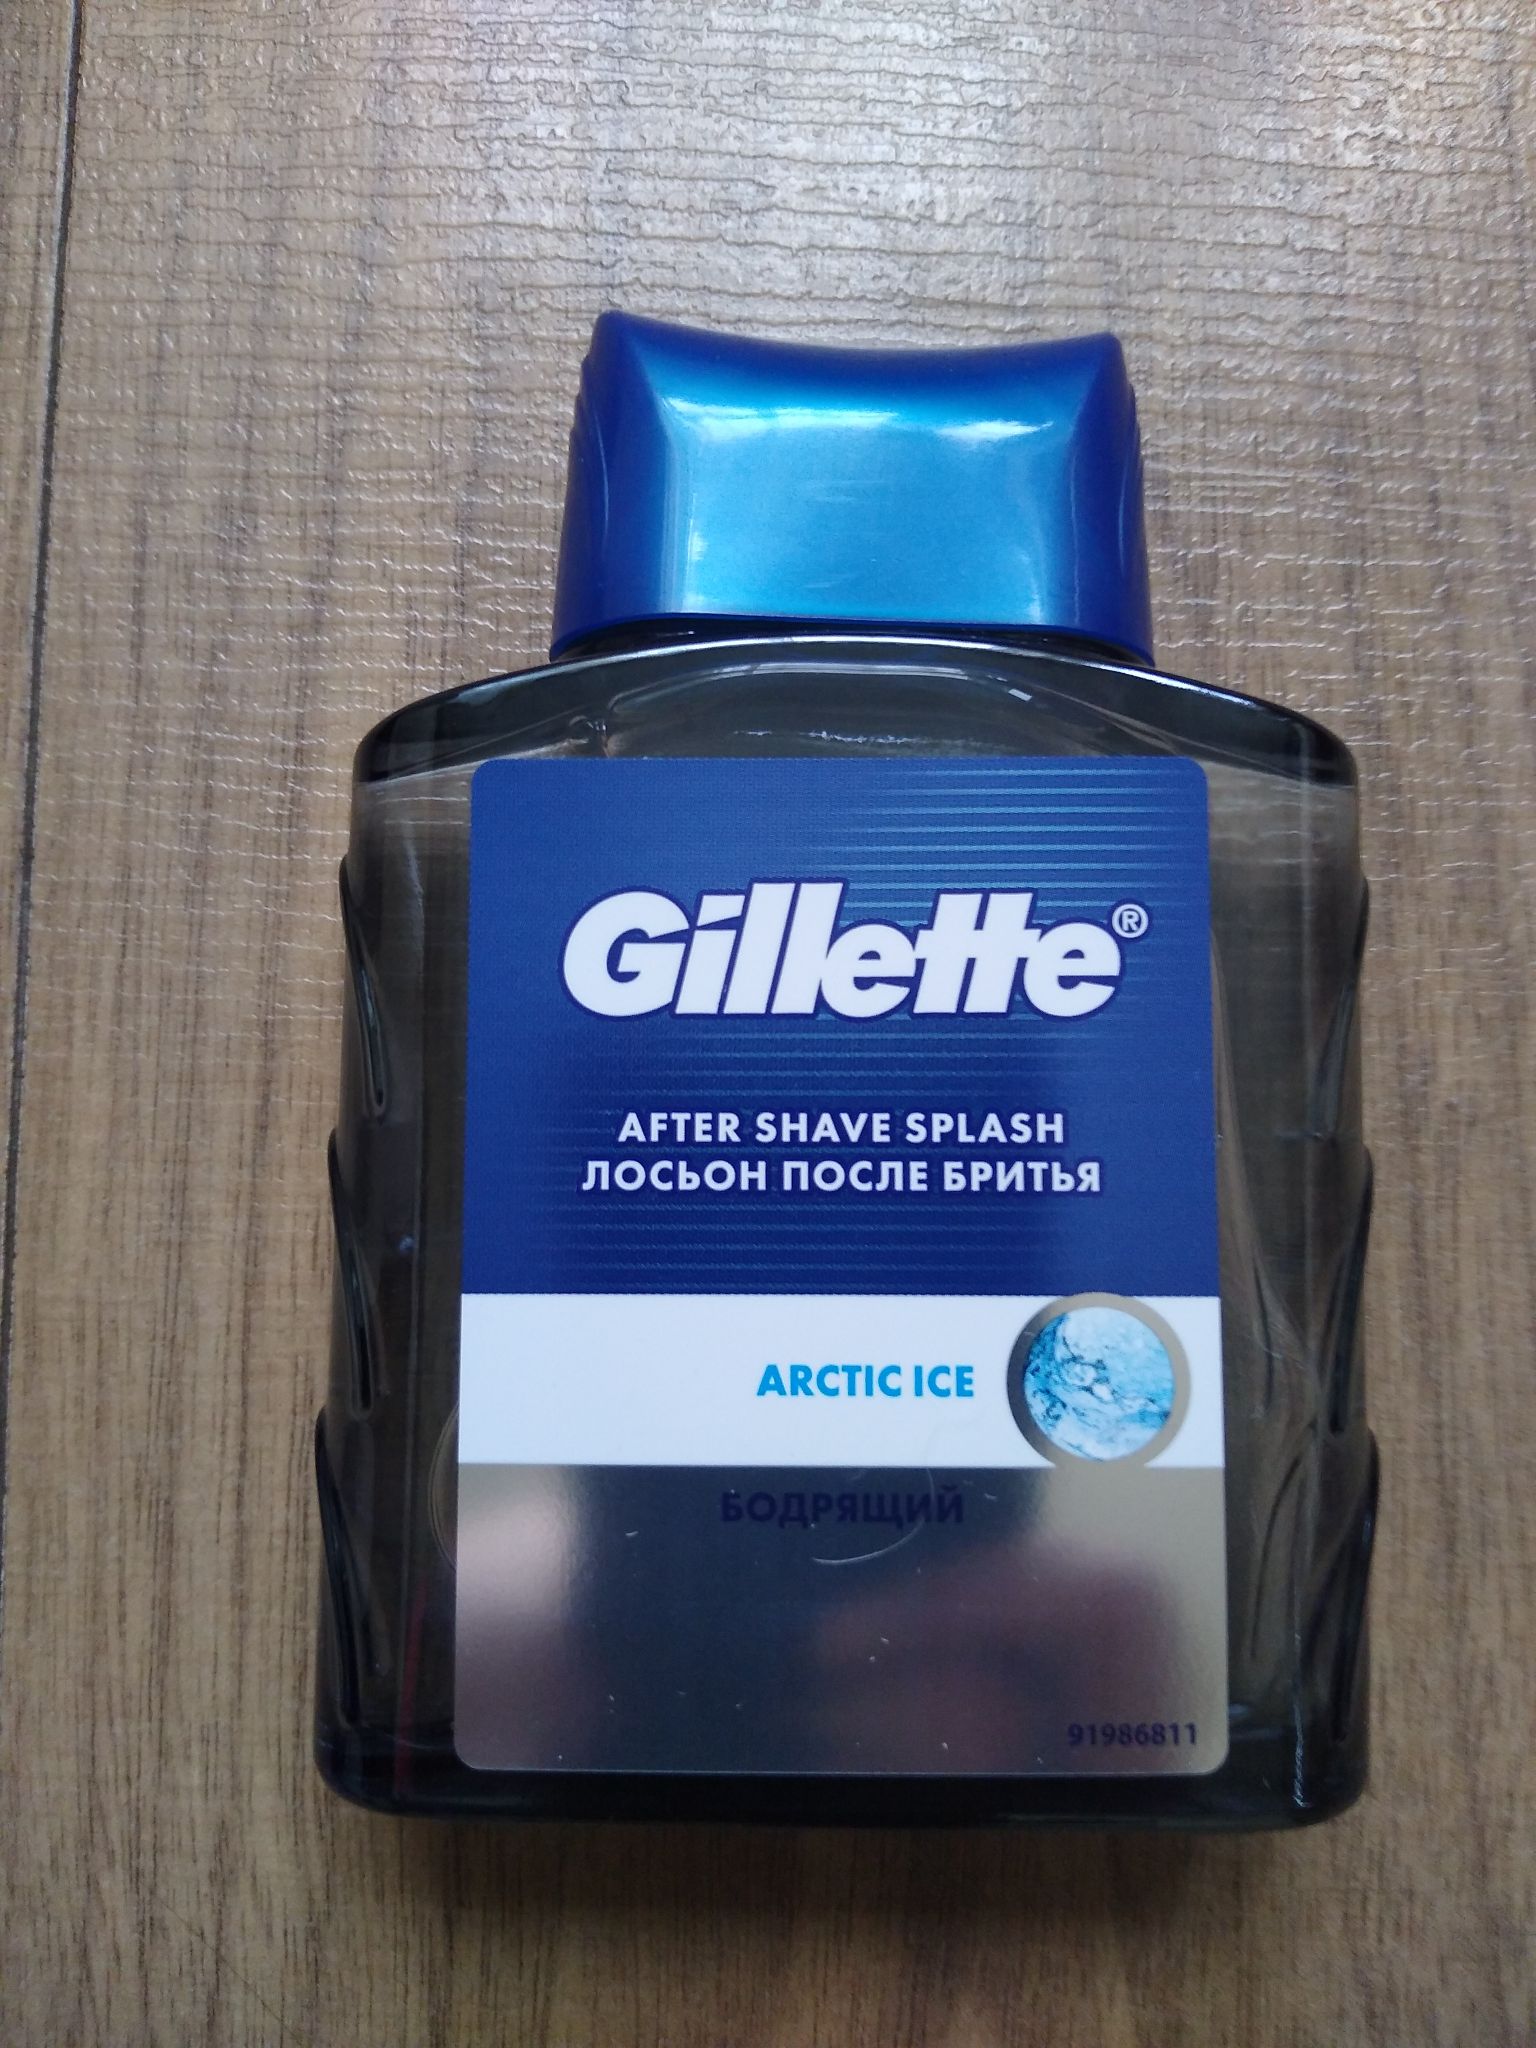 Gillette лосьон после бритья состав